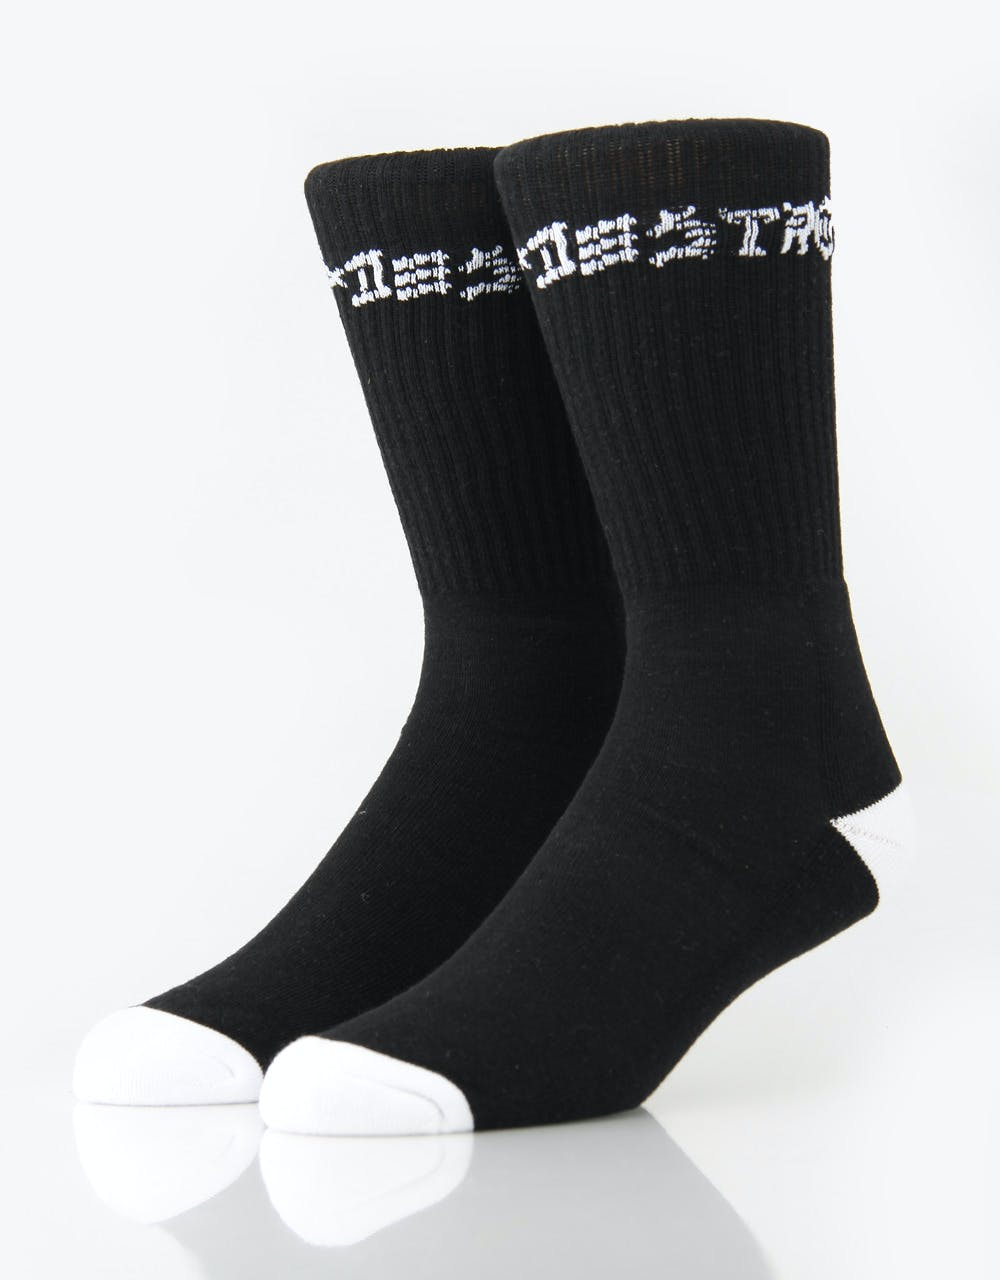 Thrasher Skate & Destroy Socks - 2 Pack